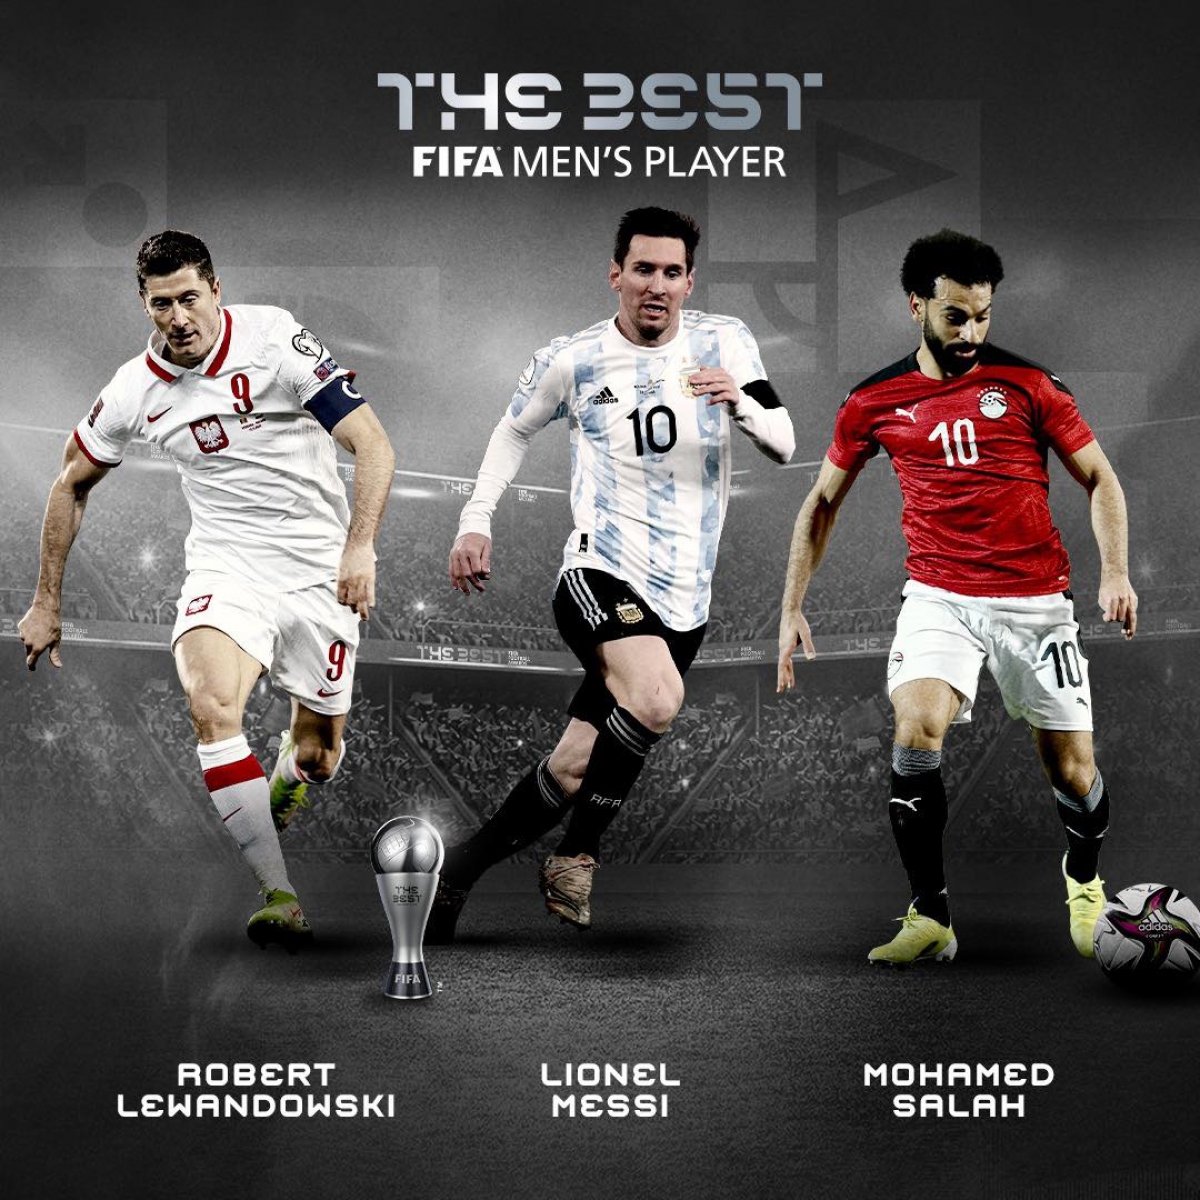 Lễ trao giải FIFA The Best 2021 diễn ra đêm nay: Messi đại chiến Salah - Lewandowski